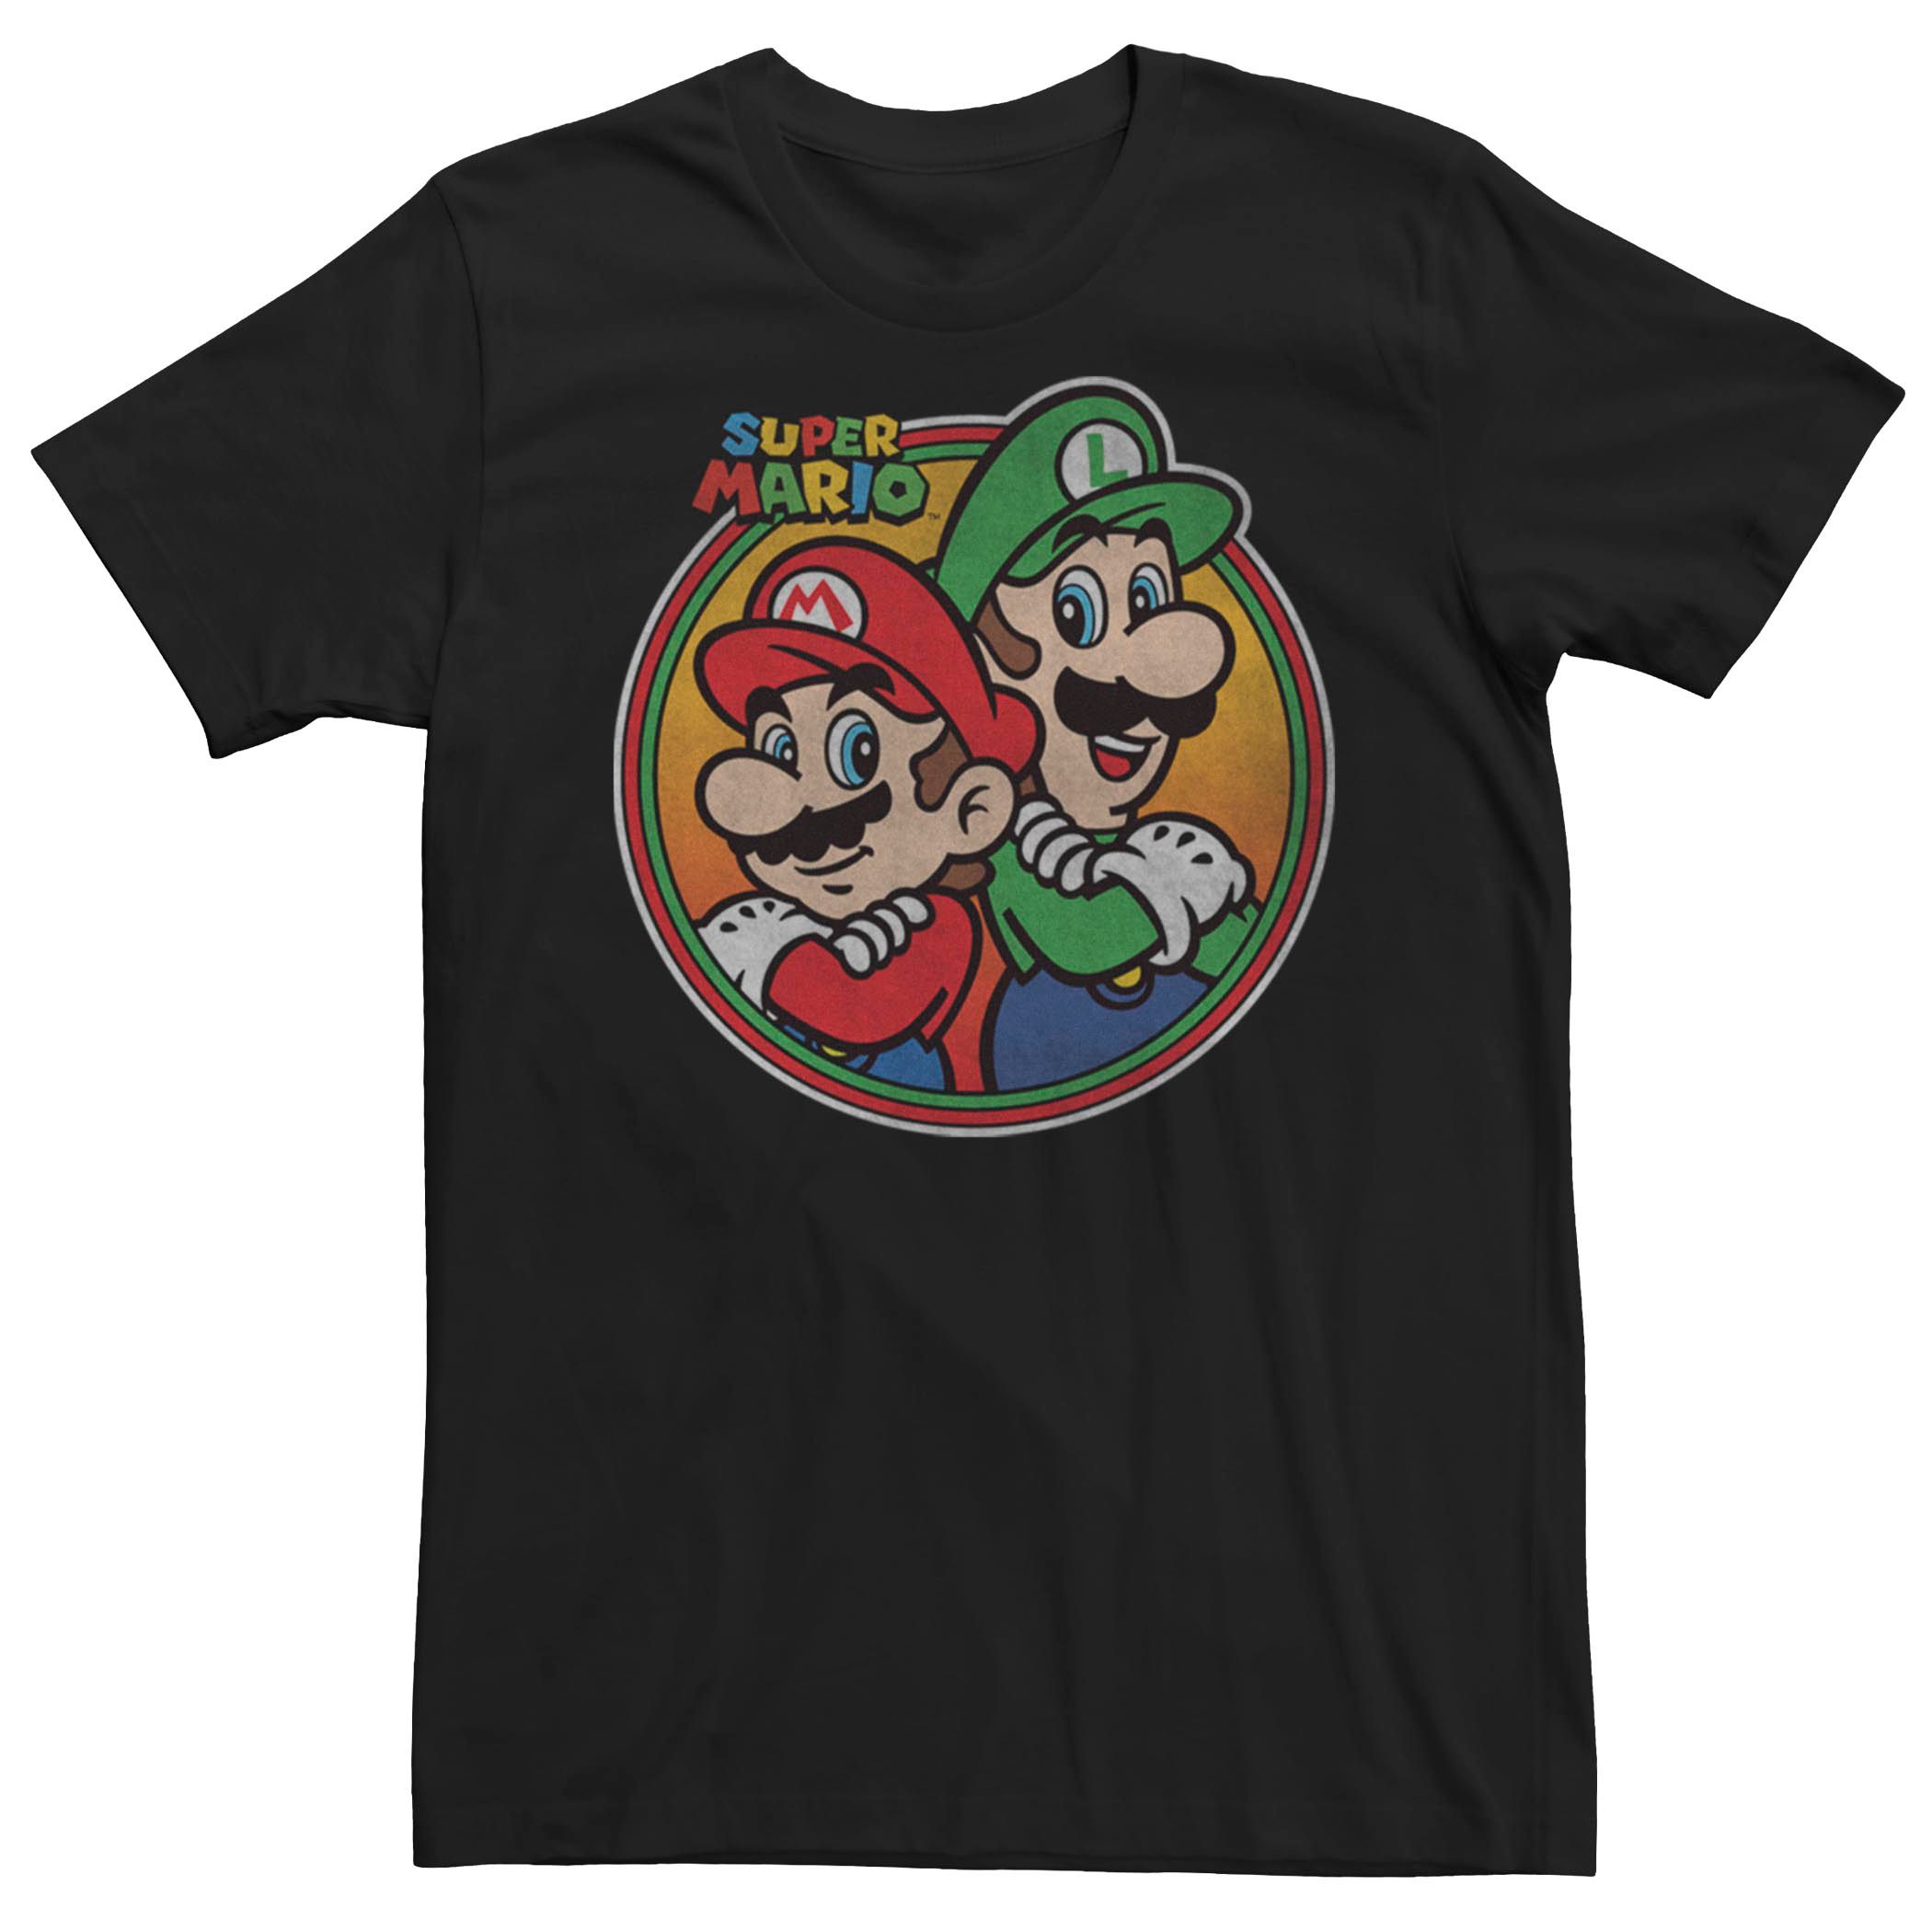 Мужская футболка Nintendo Super Mario Bros. Licensed Character, черный игра для nintendo super smash bros